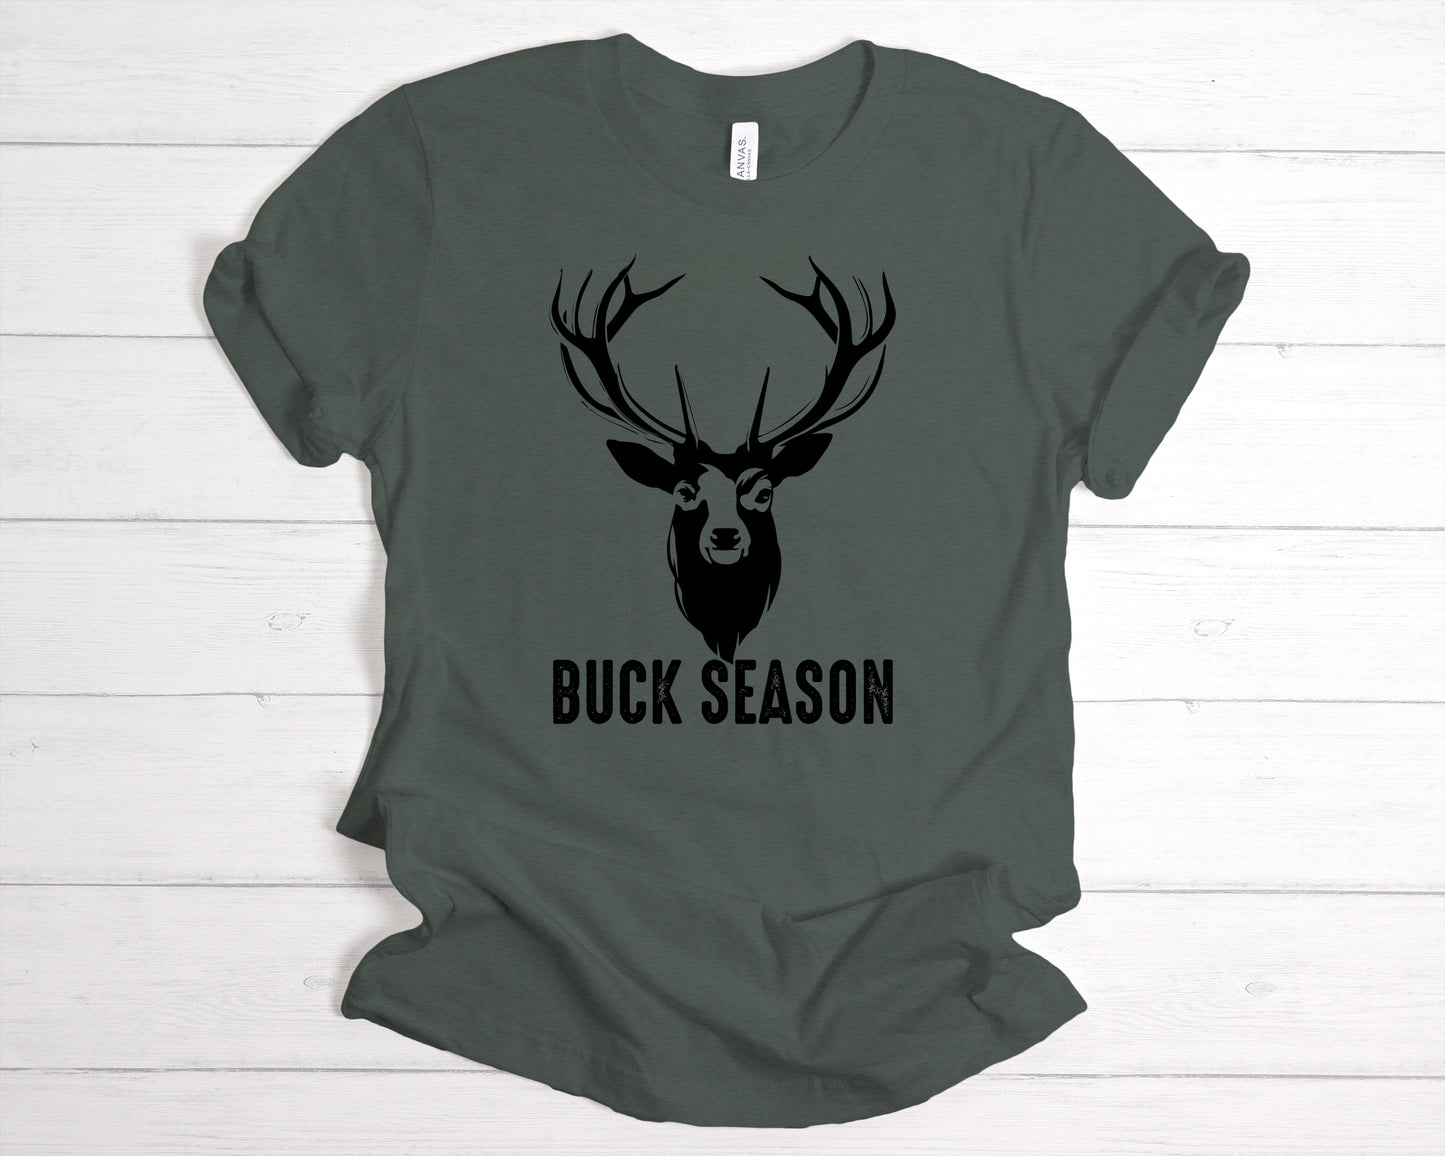 Buck Season